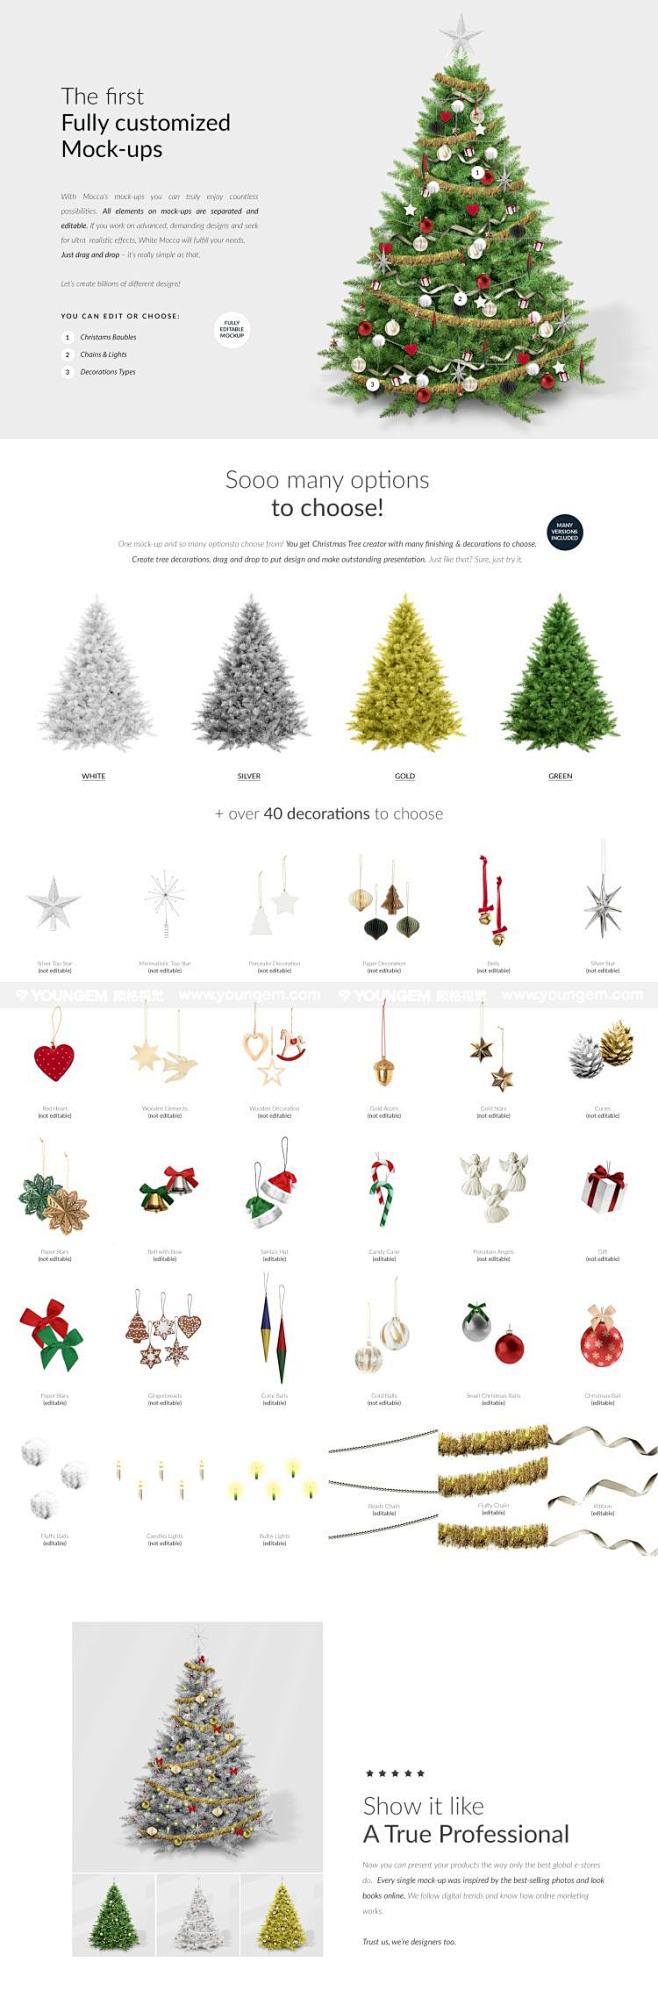 华丽圣诞节自定义圣诞树装饰布置ps分层样...